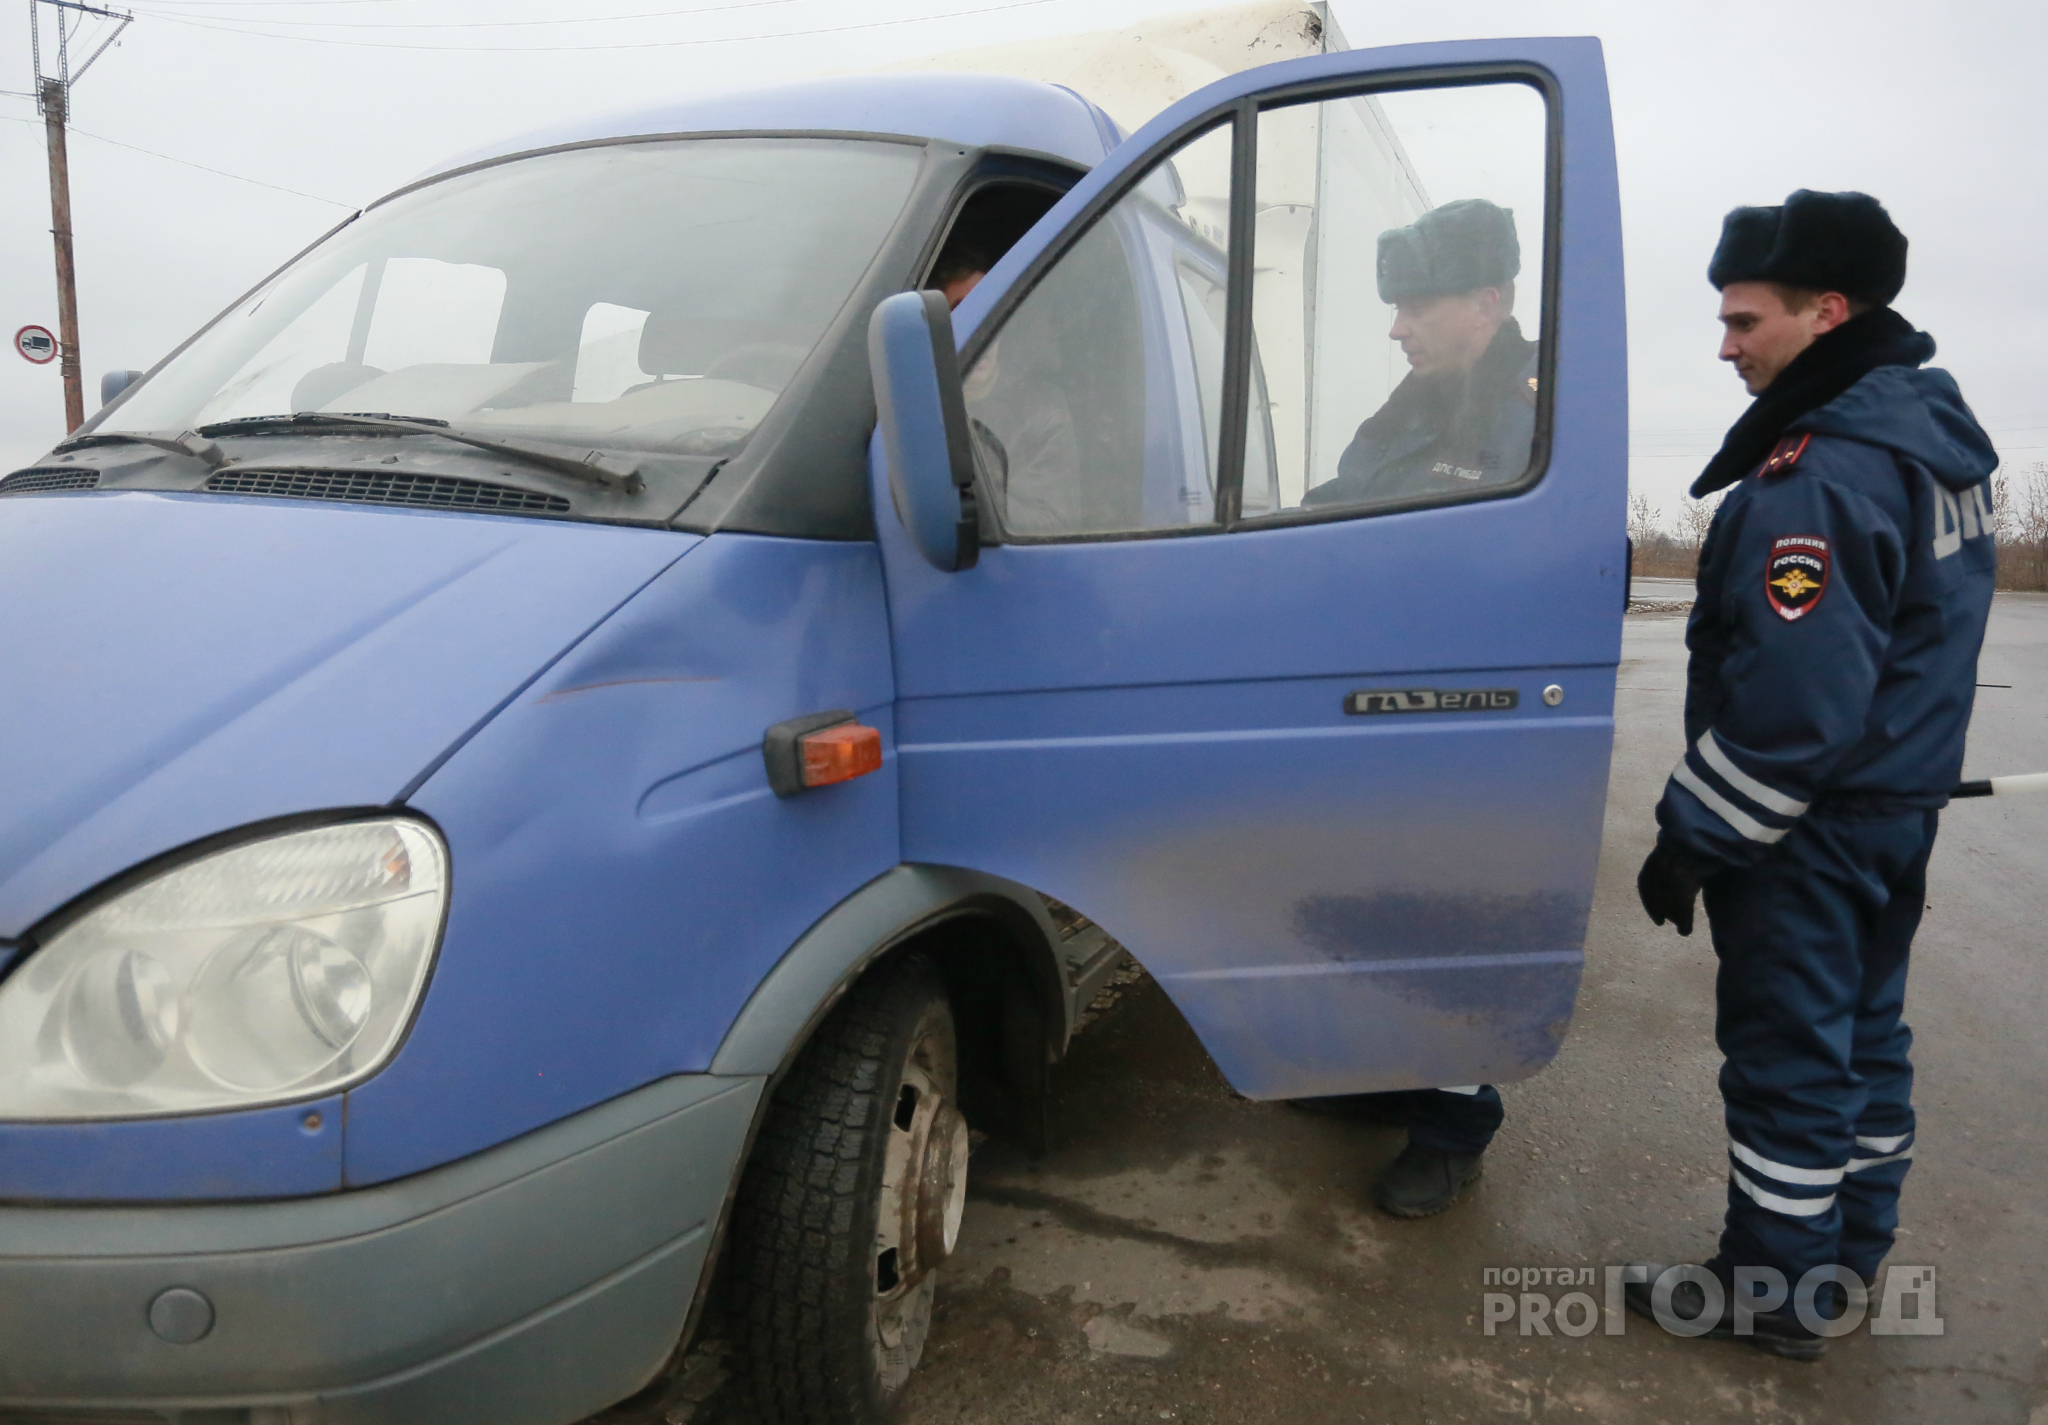 «С глаз долой, из сердца вон!»: в России пьяных водителей хотят наказывать жестче